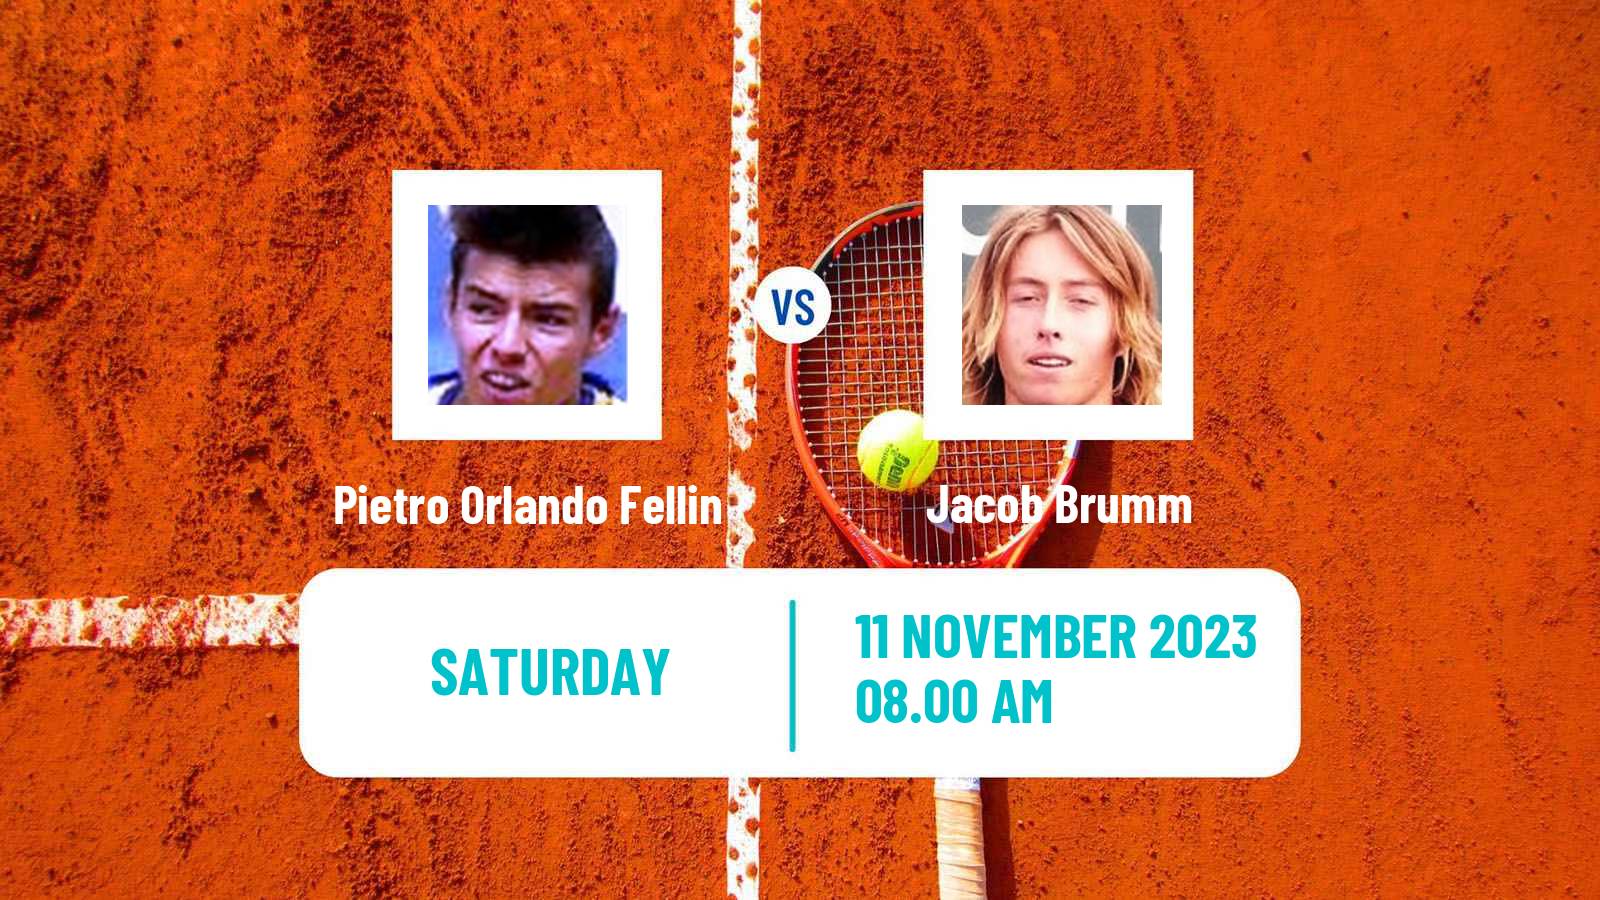 Tennis ITF M15 Santo Domingo 2 Men Pietro Orlando Fellin - Jacob Brumm